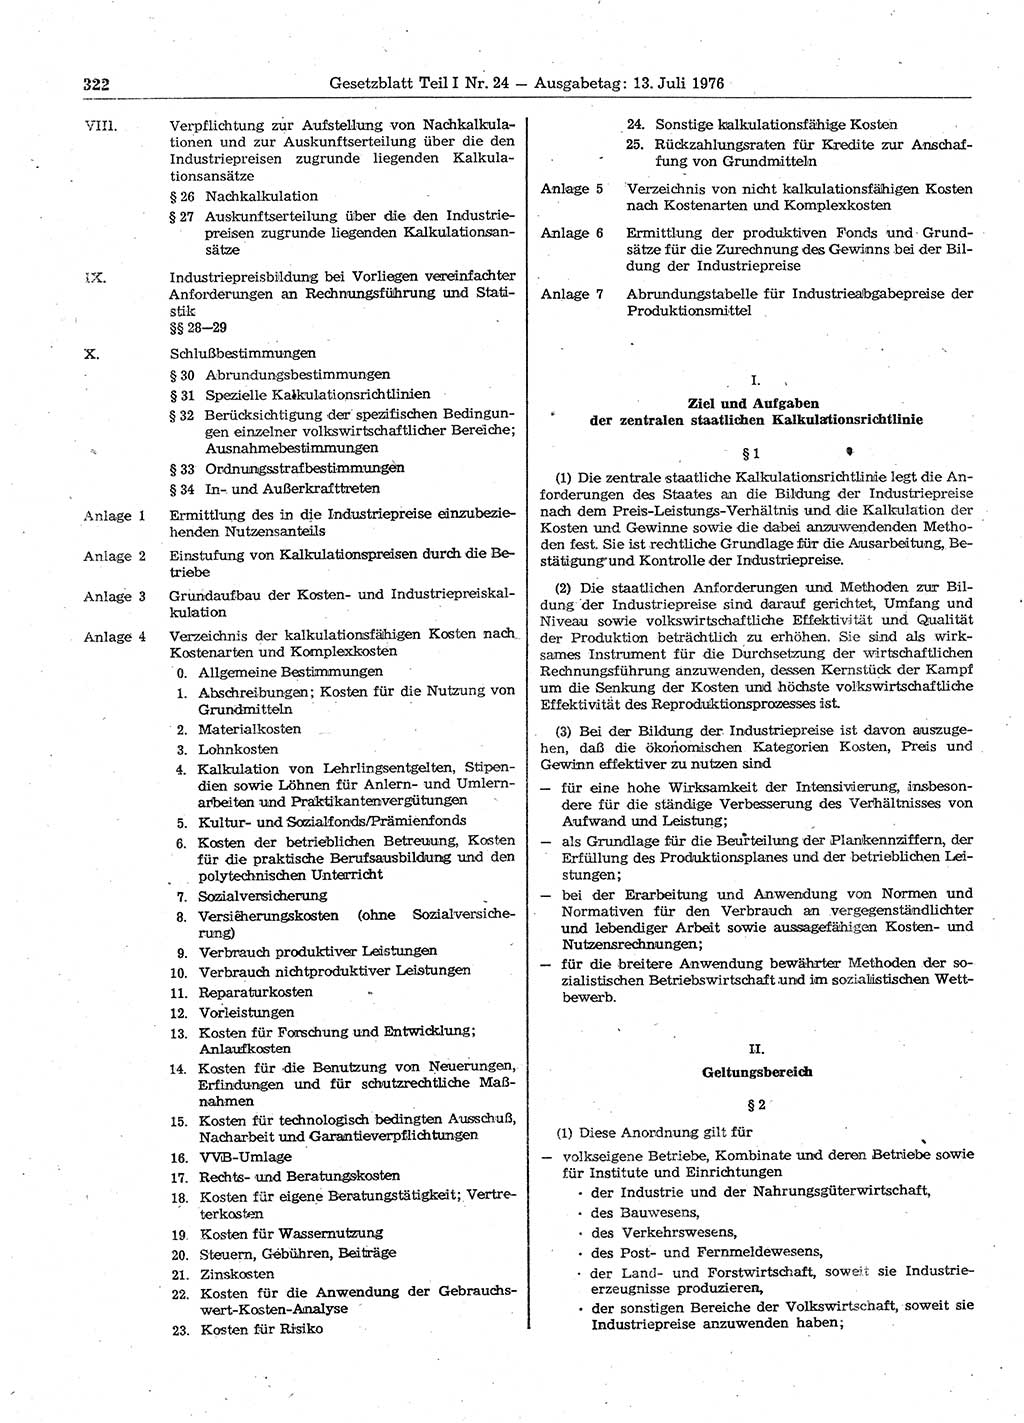 Gesetzblatt (GBl.) der Deutschen Demokratischen Republik (DDR) Teil Ⅰ 1976, Seite 322 (GBl. DDR Ⅰ 1976, S. 322)